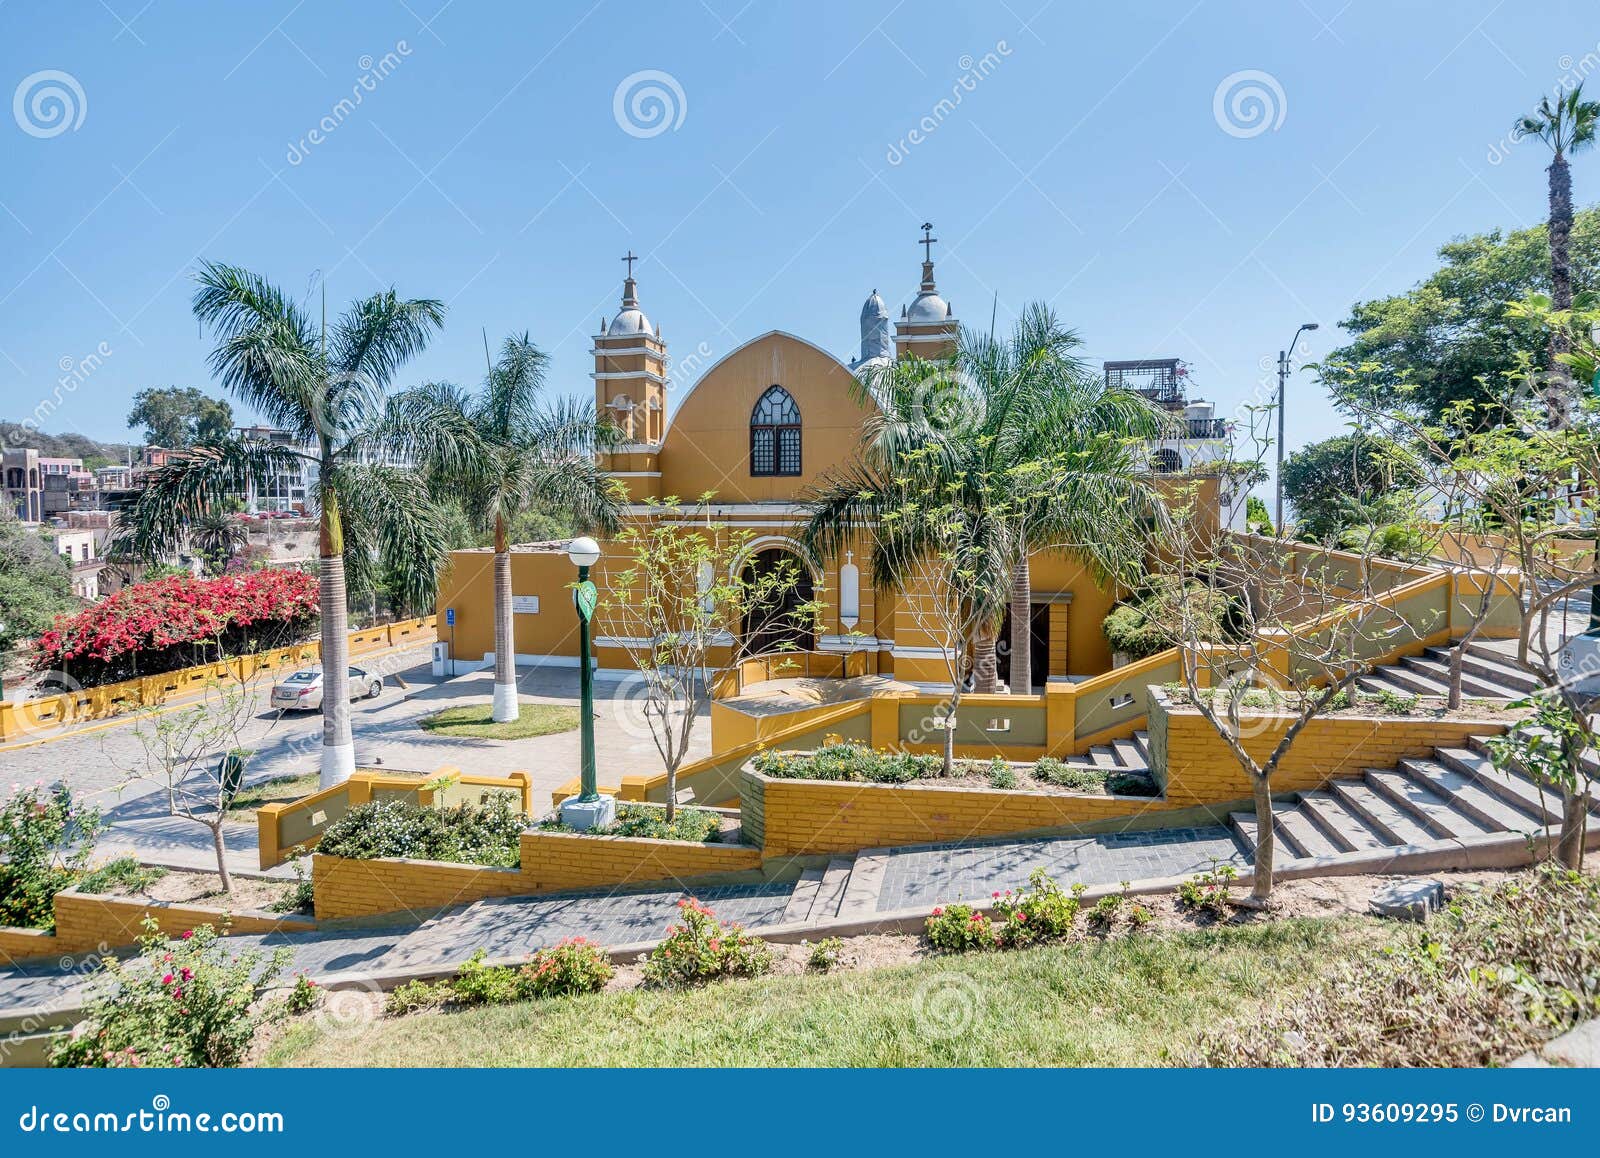 colonial church iglesia la ermita in barranco, lima, peru